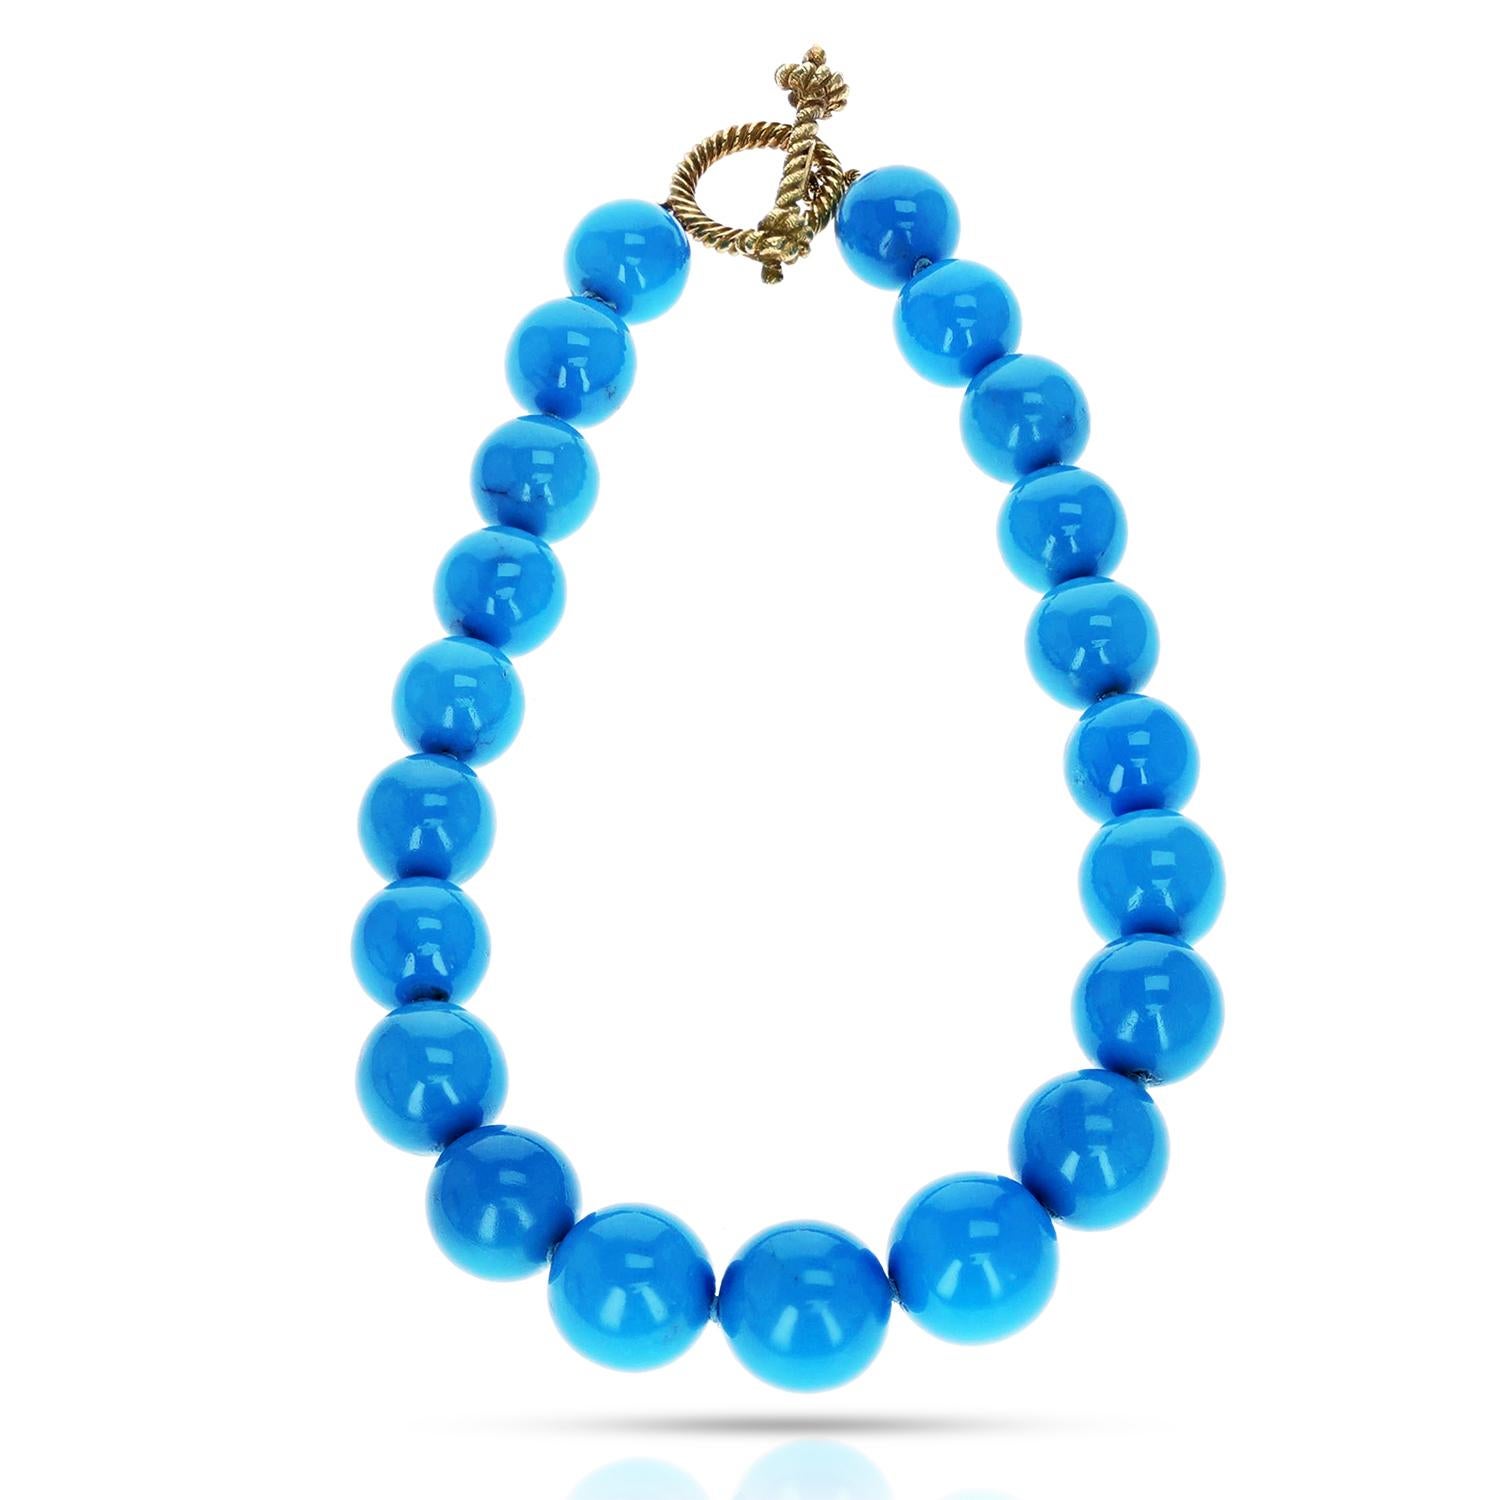 Un collier de perles de turquoise naturelle certifié par le GIA avec des perles de 16 à 20 mm. La longueur totale du collier est de 16,75 pouces et le poids total est de 182,60 grammes. Le collier a un fermoir à bascule en or signé MISH NY 750 pour